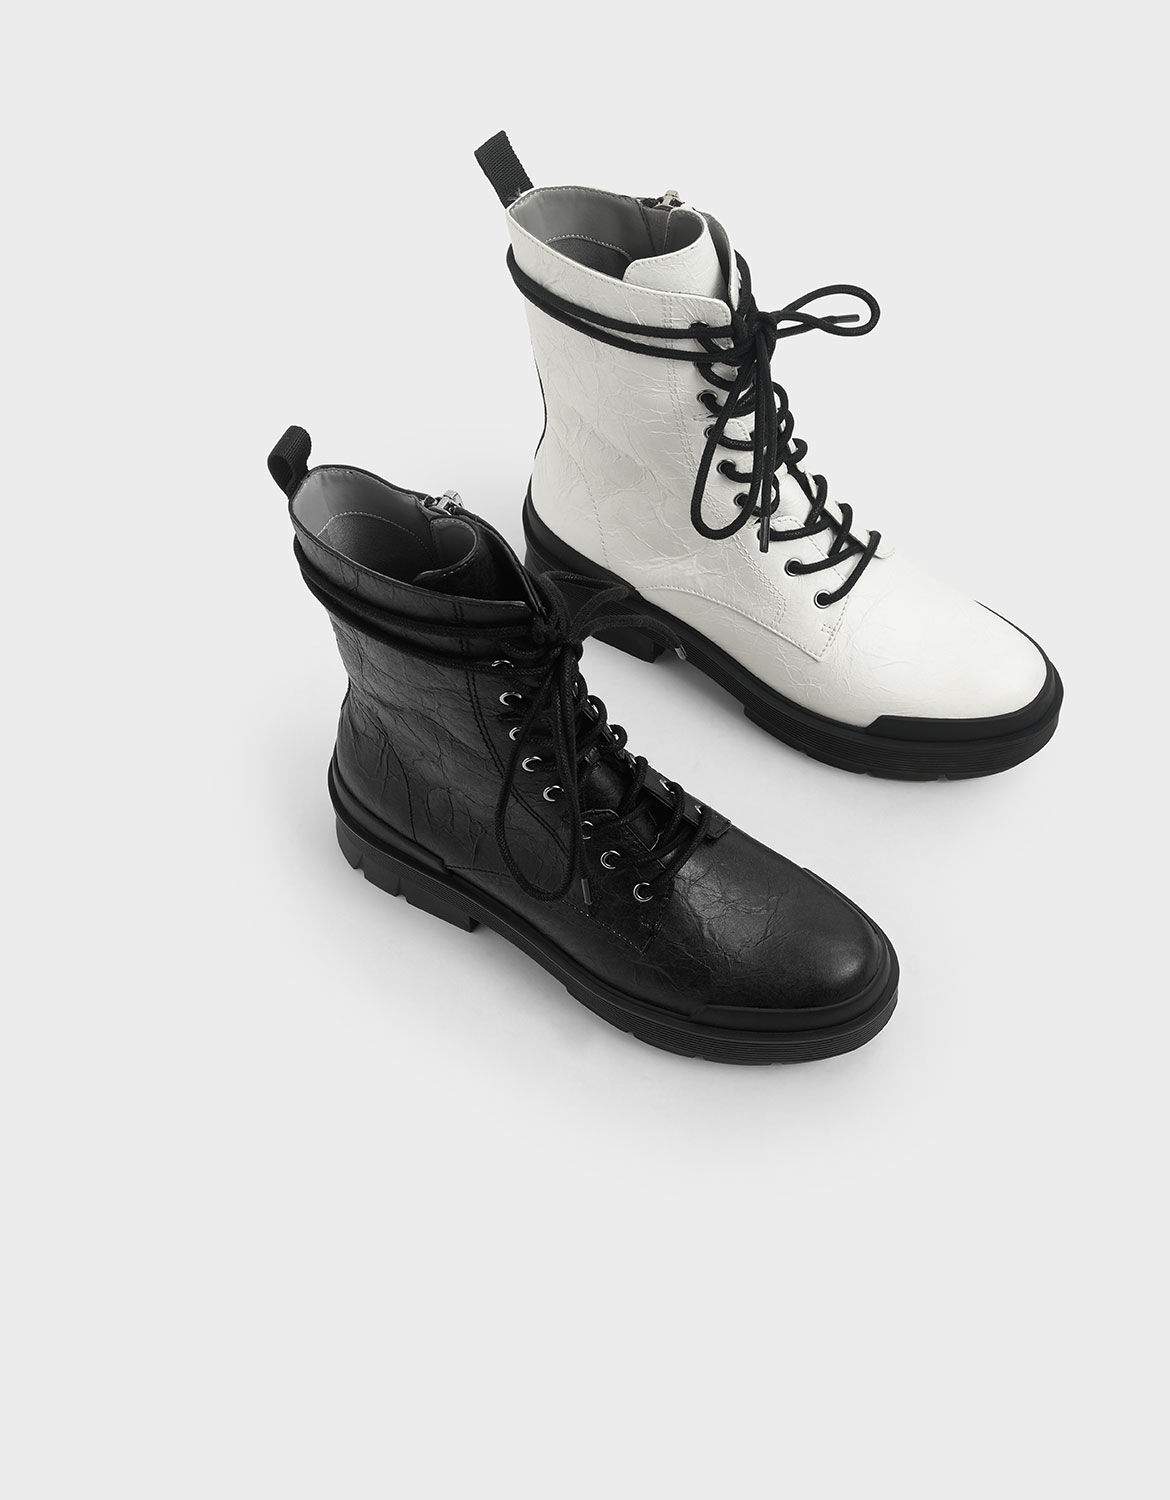 combat boots white laces